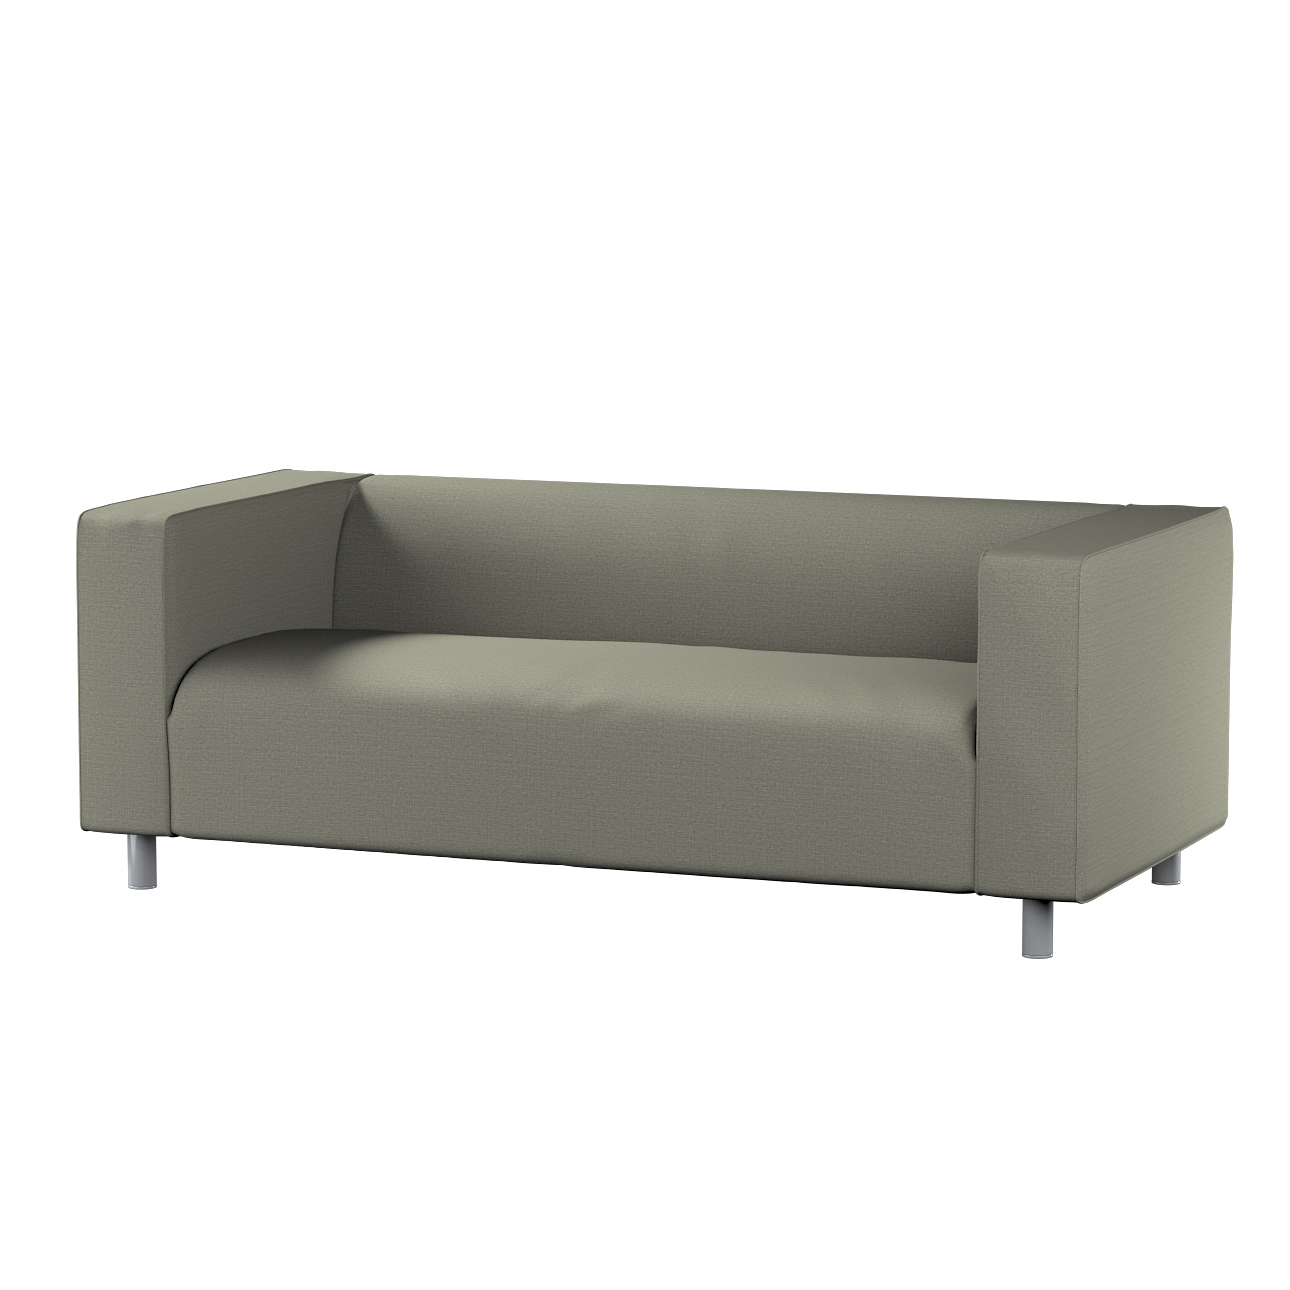 Bezug für Klippan 2-Sitzer Sofa, grau-beige, Sofahusse, Klippan 2-Sitzer, L günstig online kaufen